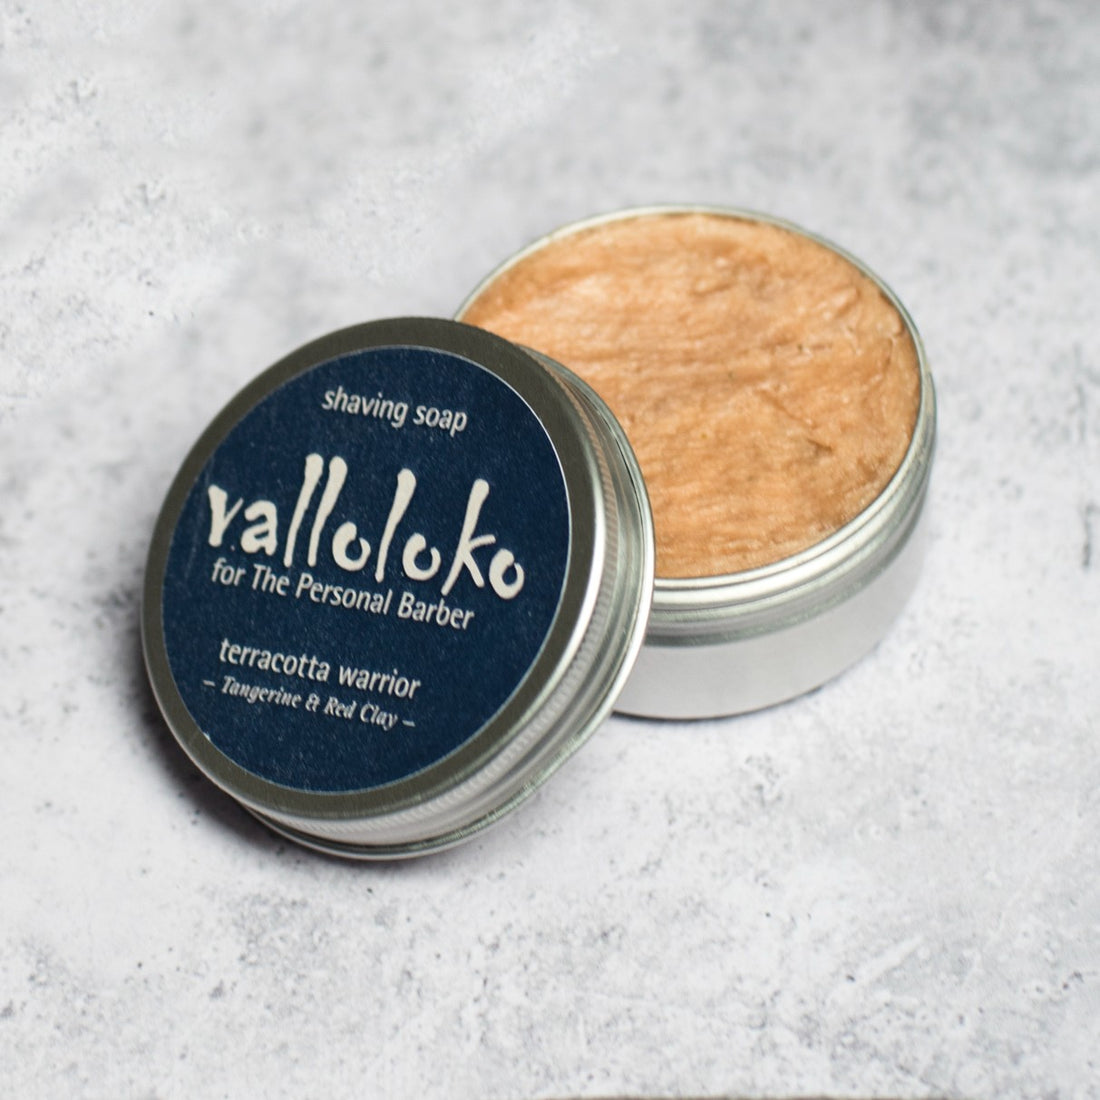 Valloloko Terracotta Warrior Shaving Soap 